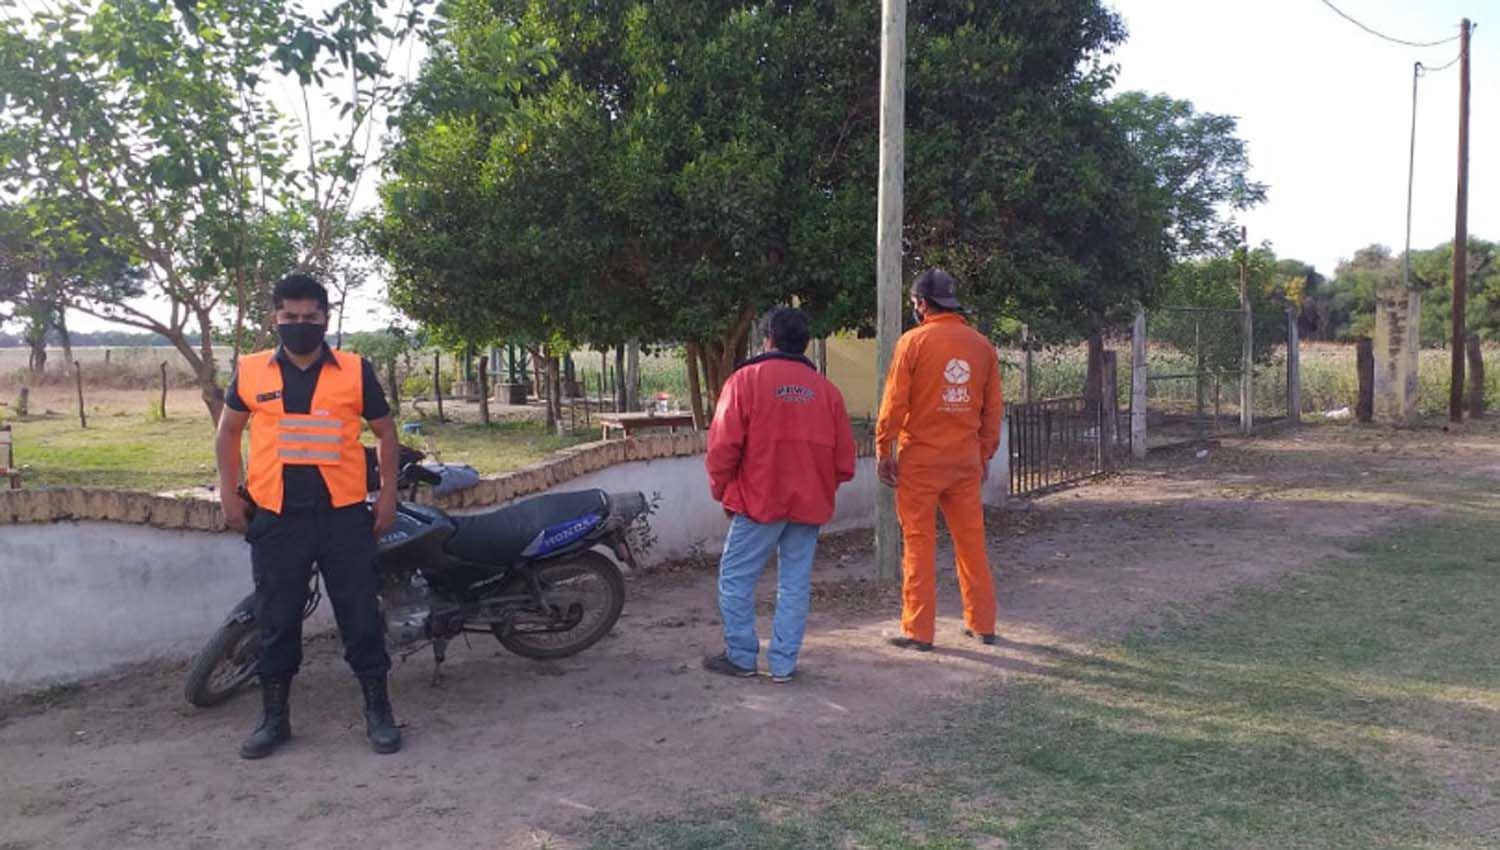 Dos tucumanos en moto pretendiacutean ingresar a Santiago sin permiso